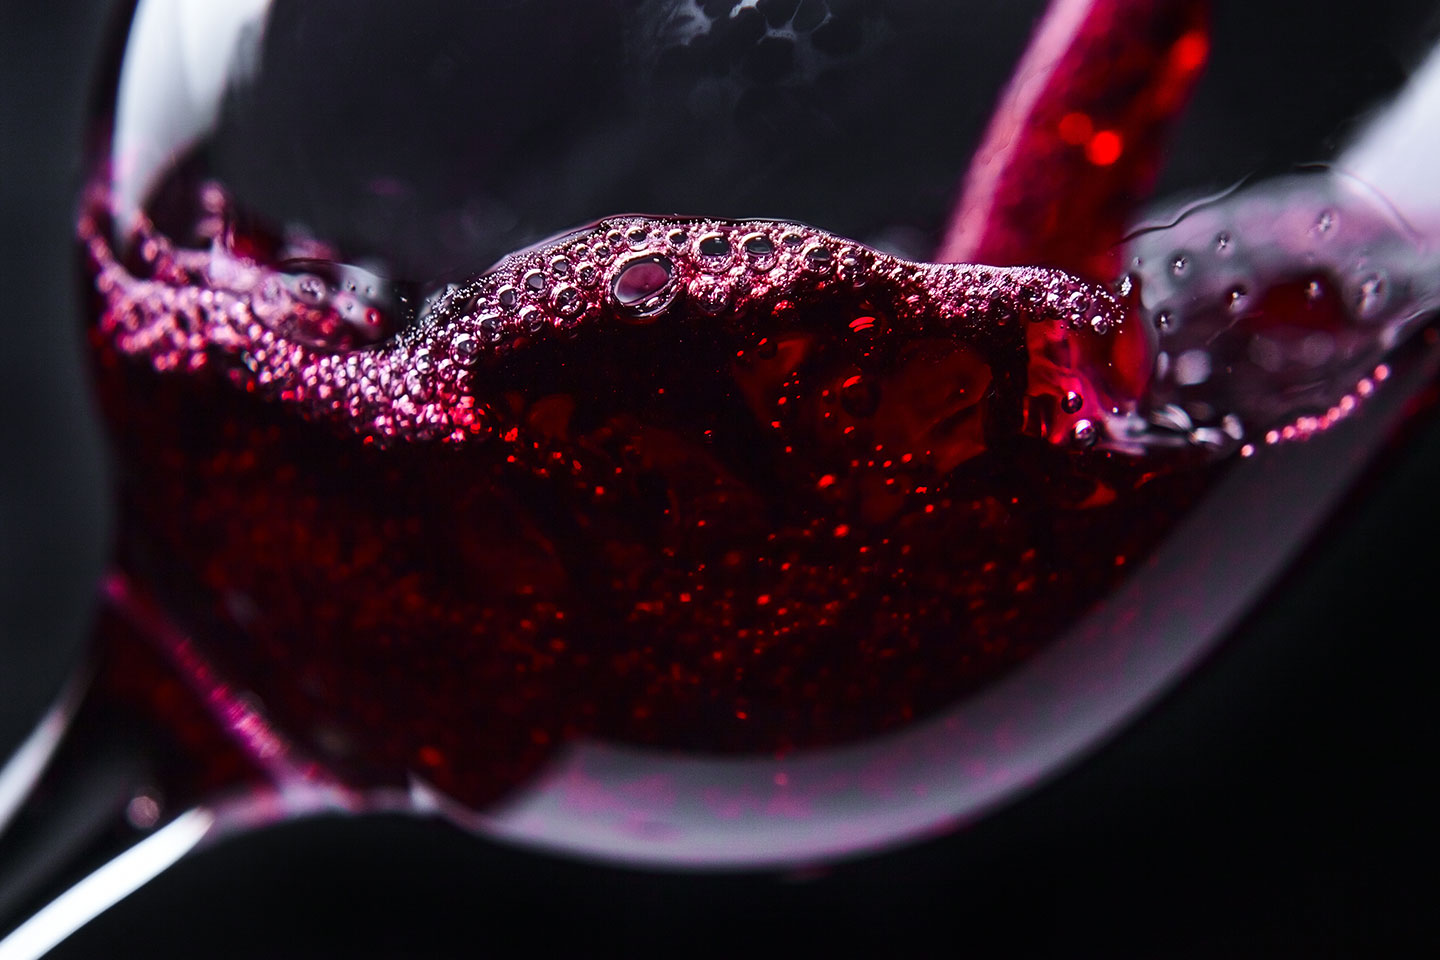 Le petit verre de vin est votre péché mignon en vol ? Vous allez peut-être devoir changer vos habitudes. 